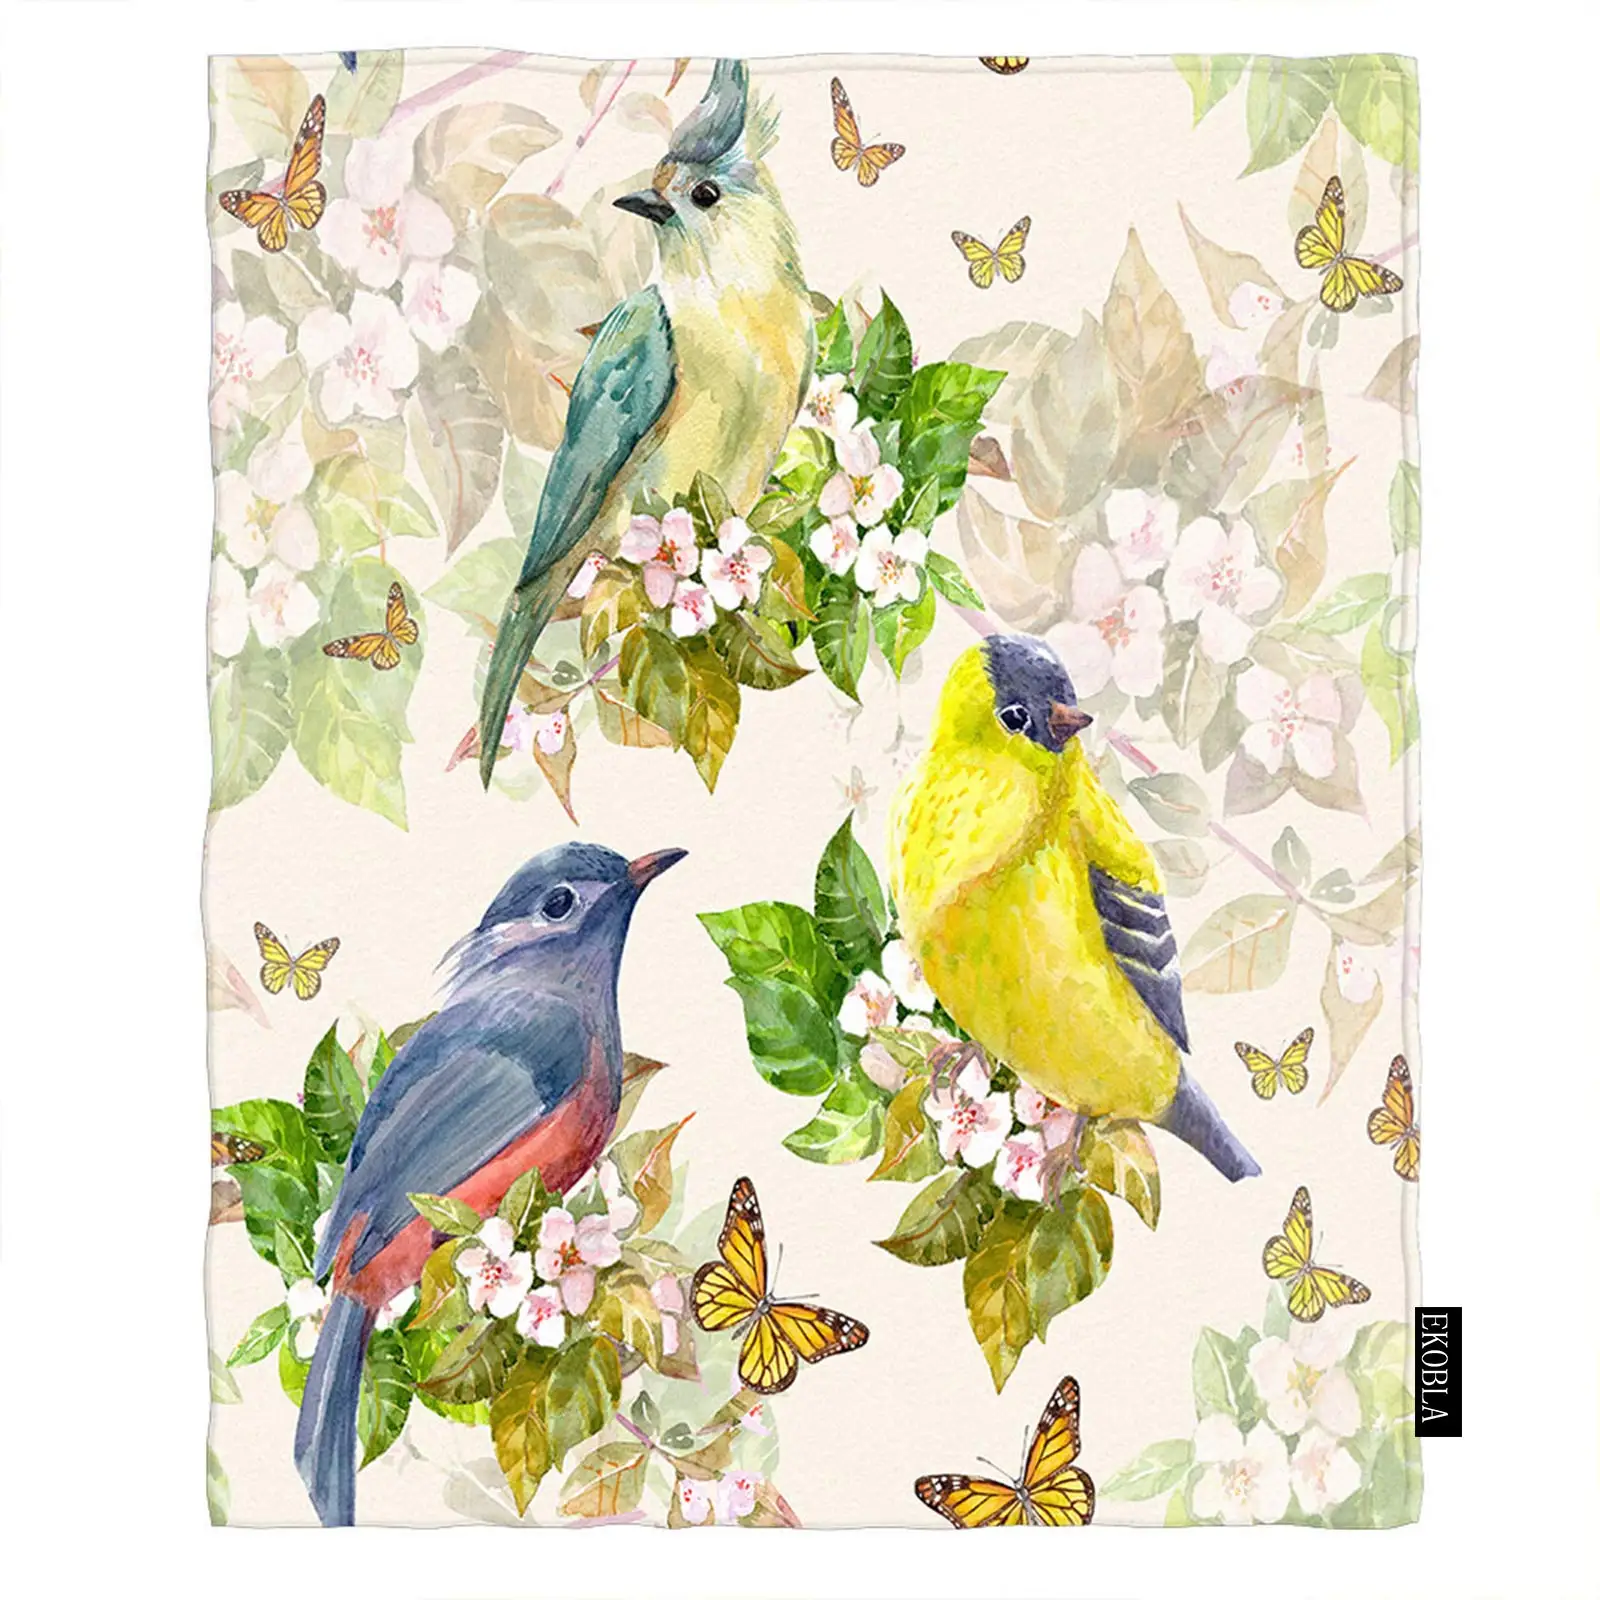 

Мягкое фланелевое одеяло для дивана, мягкое плюшевое покрывало с птицами на весну, цветущими бабочками, натуральными цветами, листьями, экологией, диван-кровать